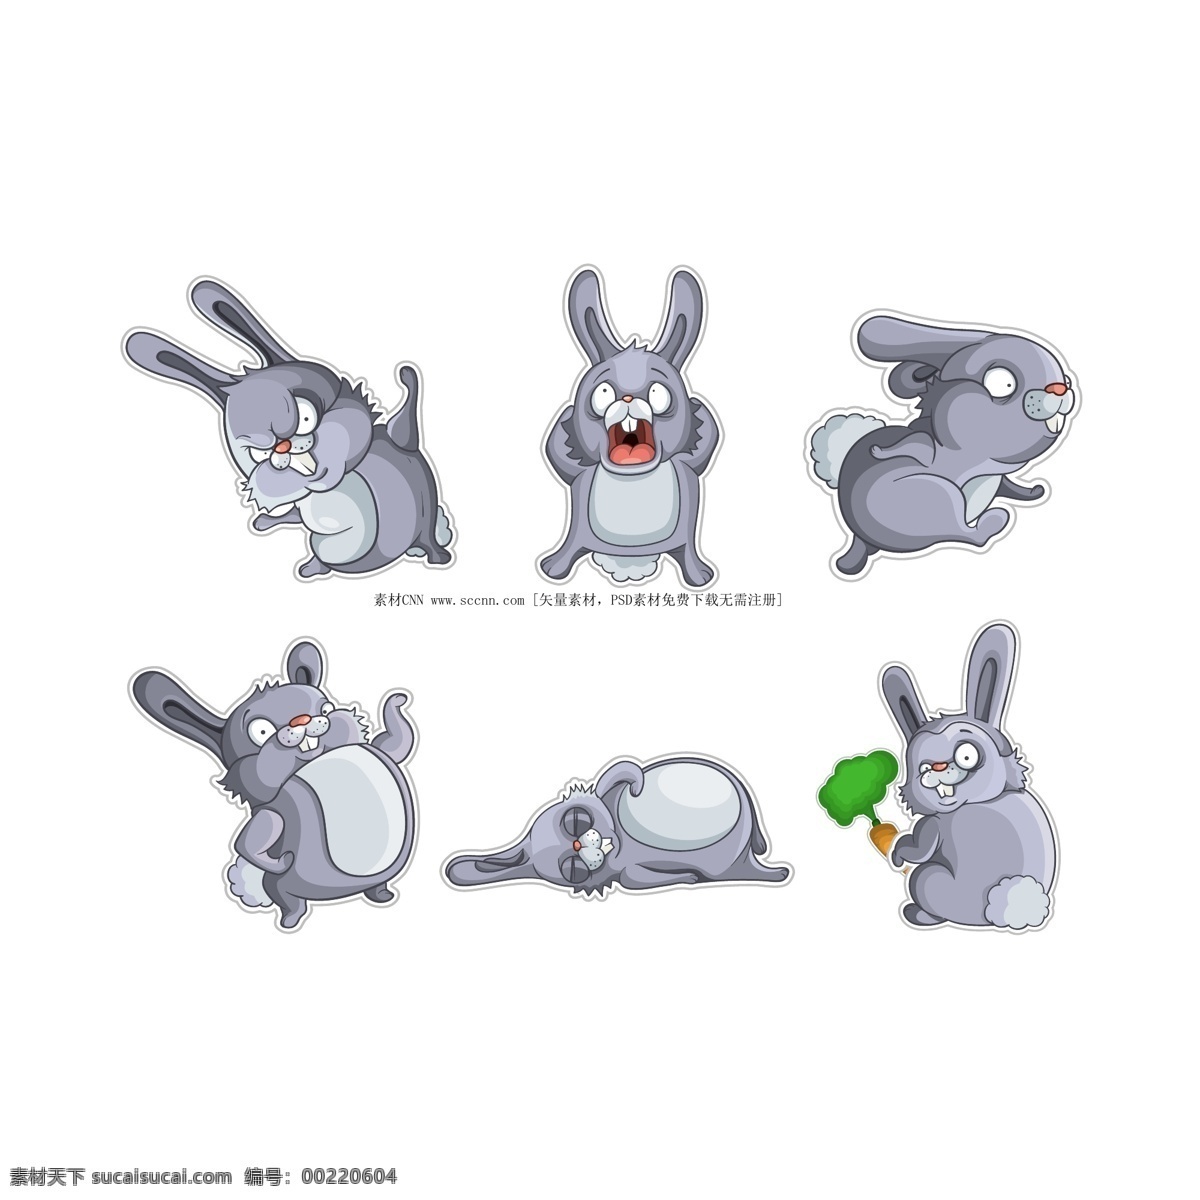 可爱 的卡 通 小 兔子 灰色 卡通动物 可爱的卡通 卡通 矢量 矢量图 其他矢量图